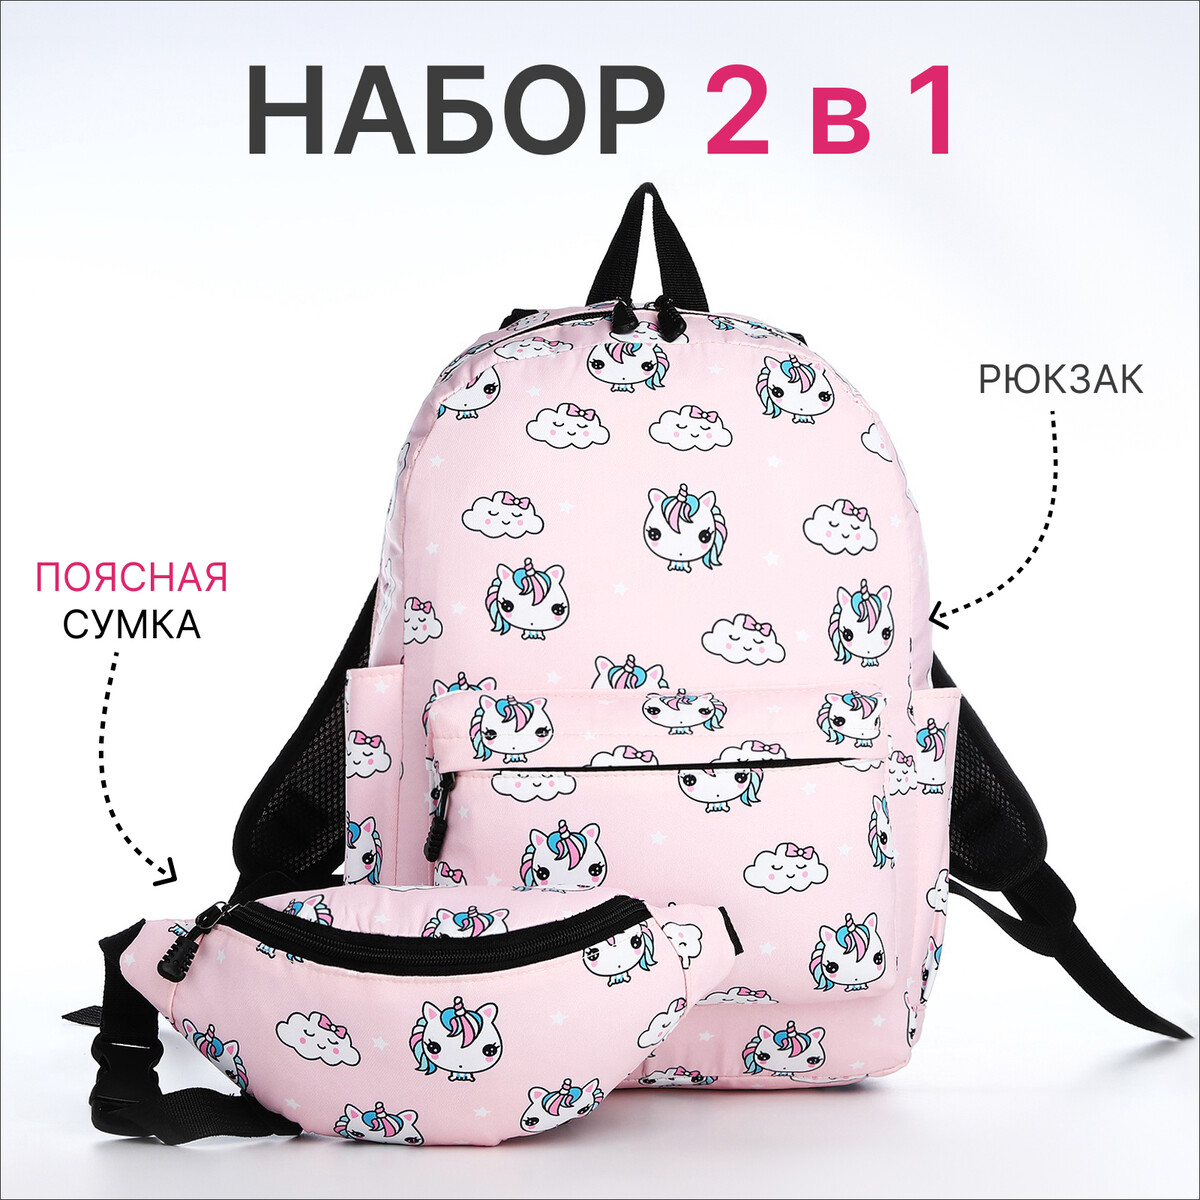 Рюкзак молодежный из текстиля на молнии, 3 кармана, поясная сумка, цвет розовый